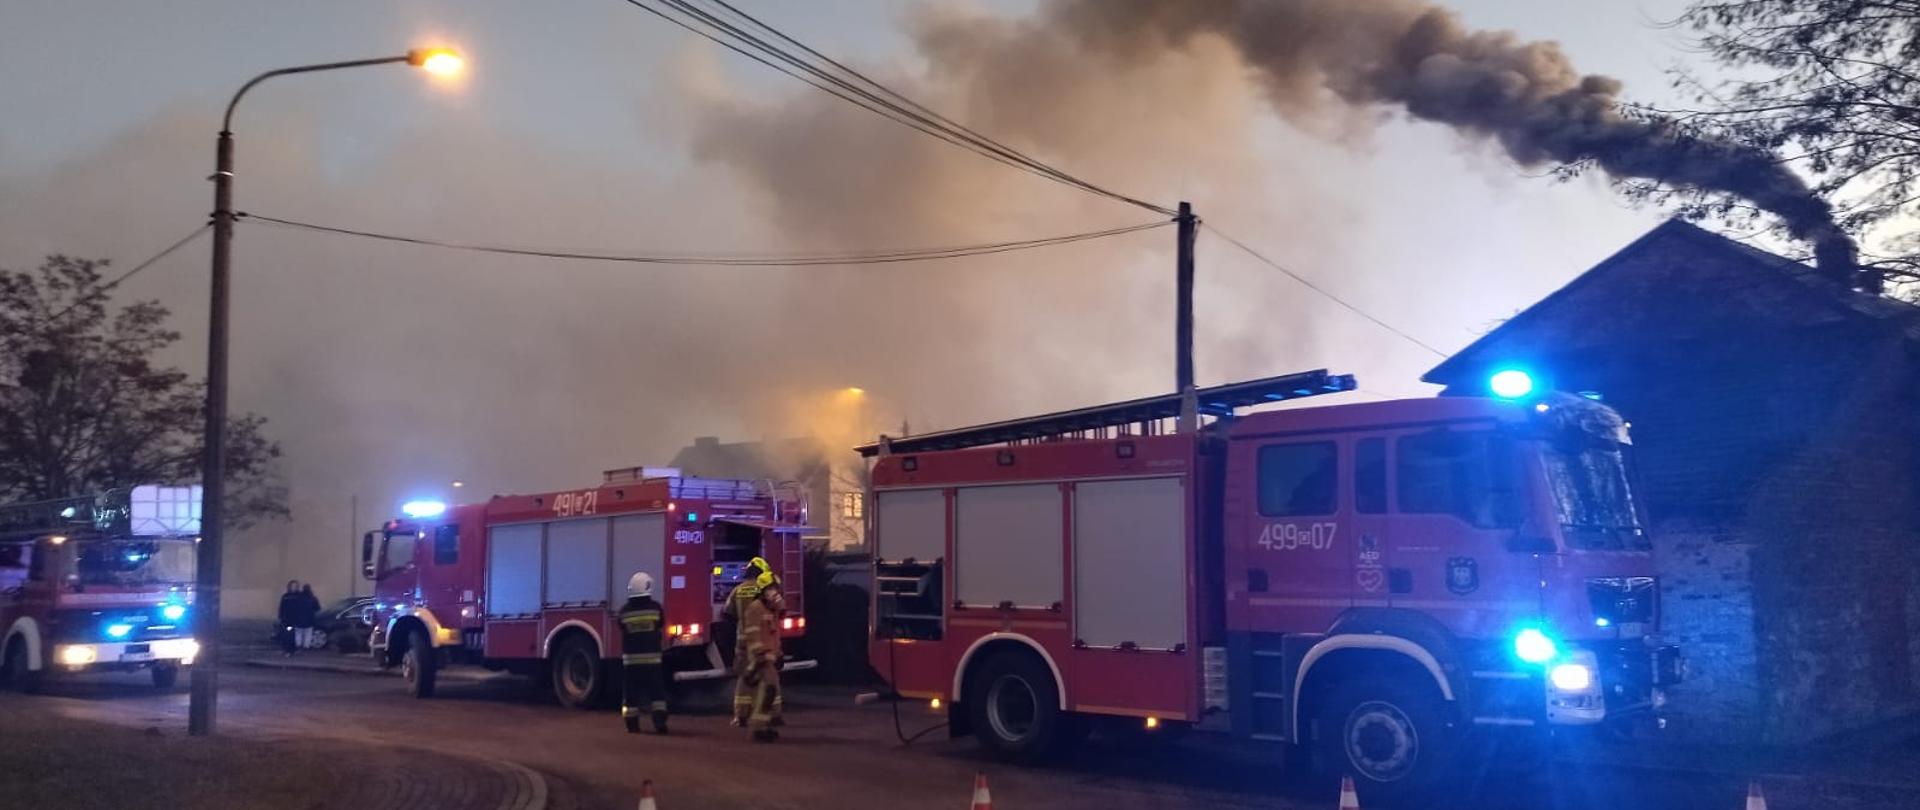 Zdjęcie przedstawia dwa samochody pożarnicze na tle budynku z dymiącym kominem